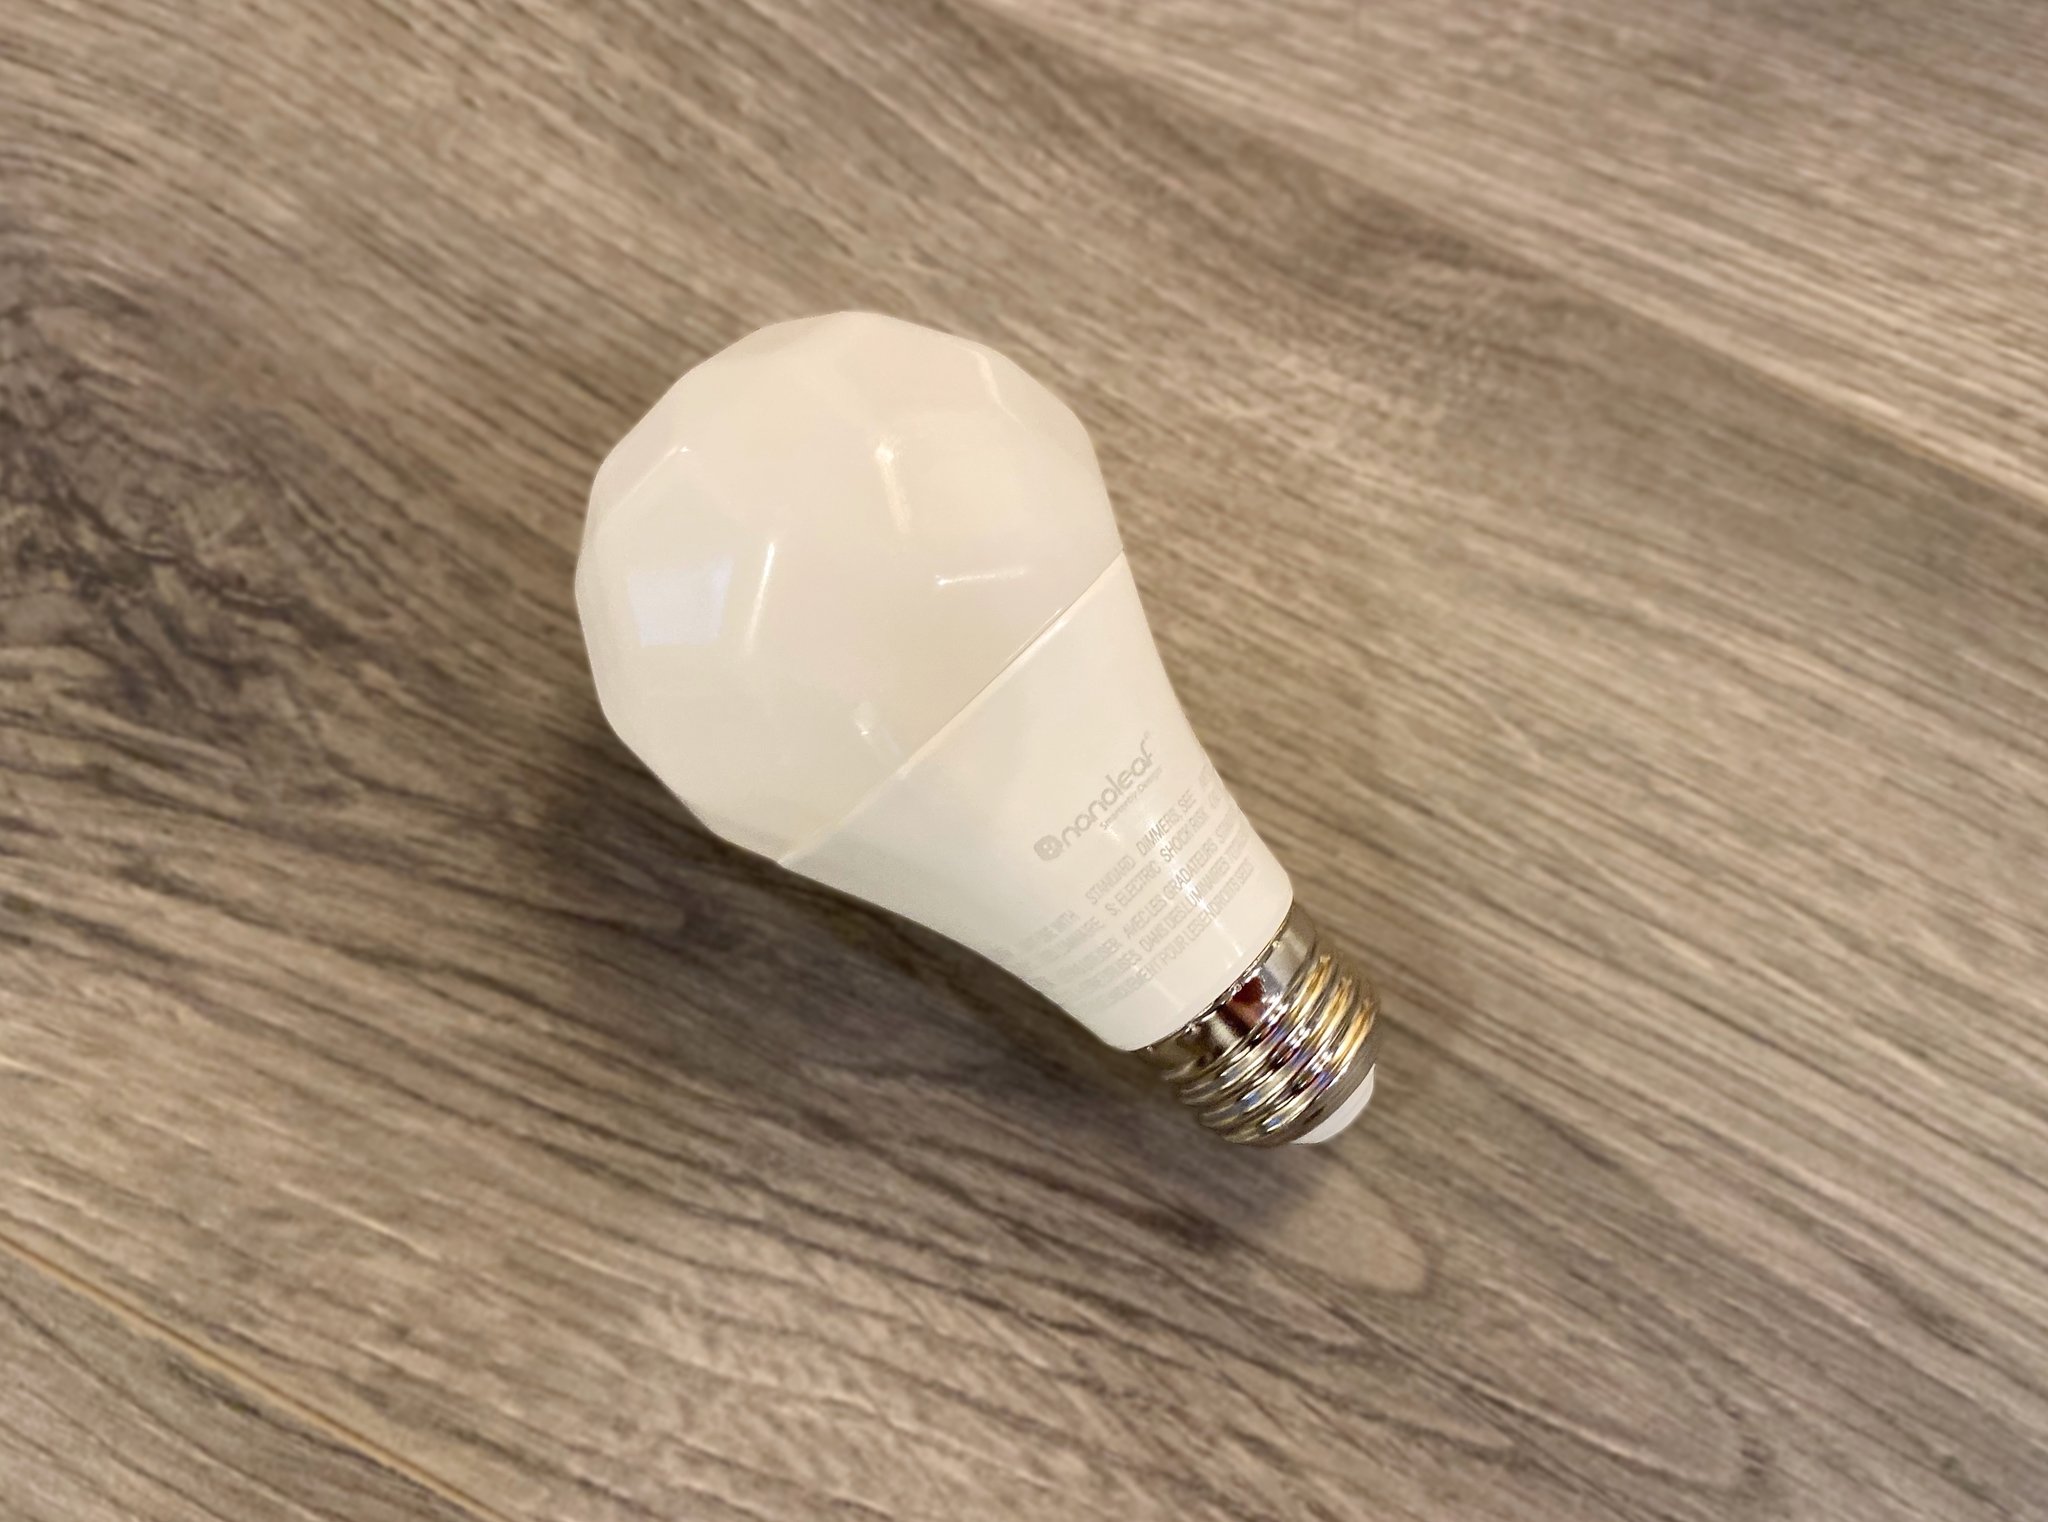 Nanoleaf Essentials A19 Light Bulb Review Side View